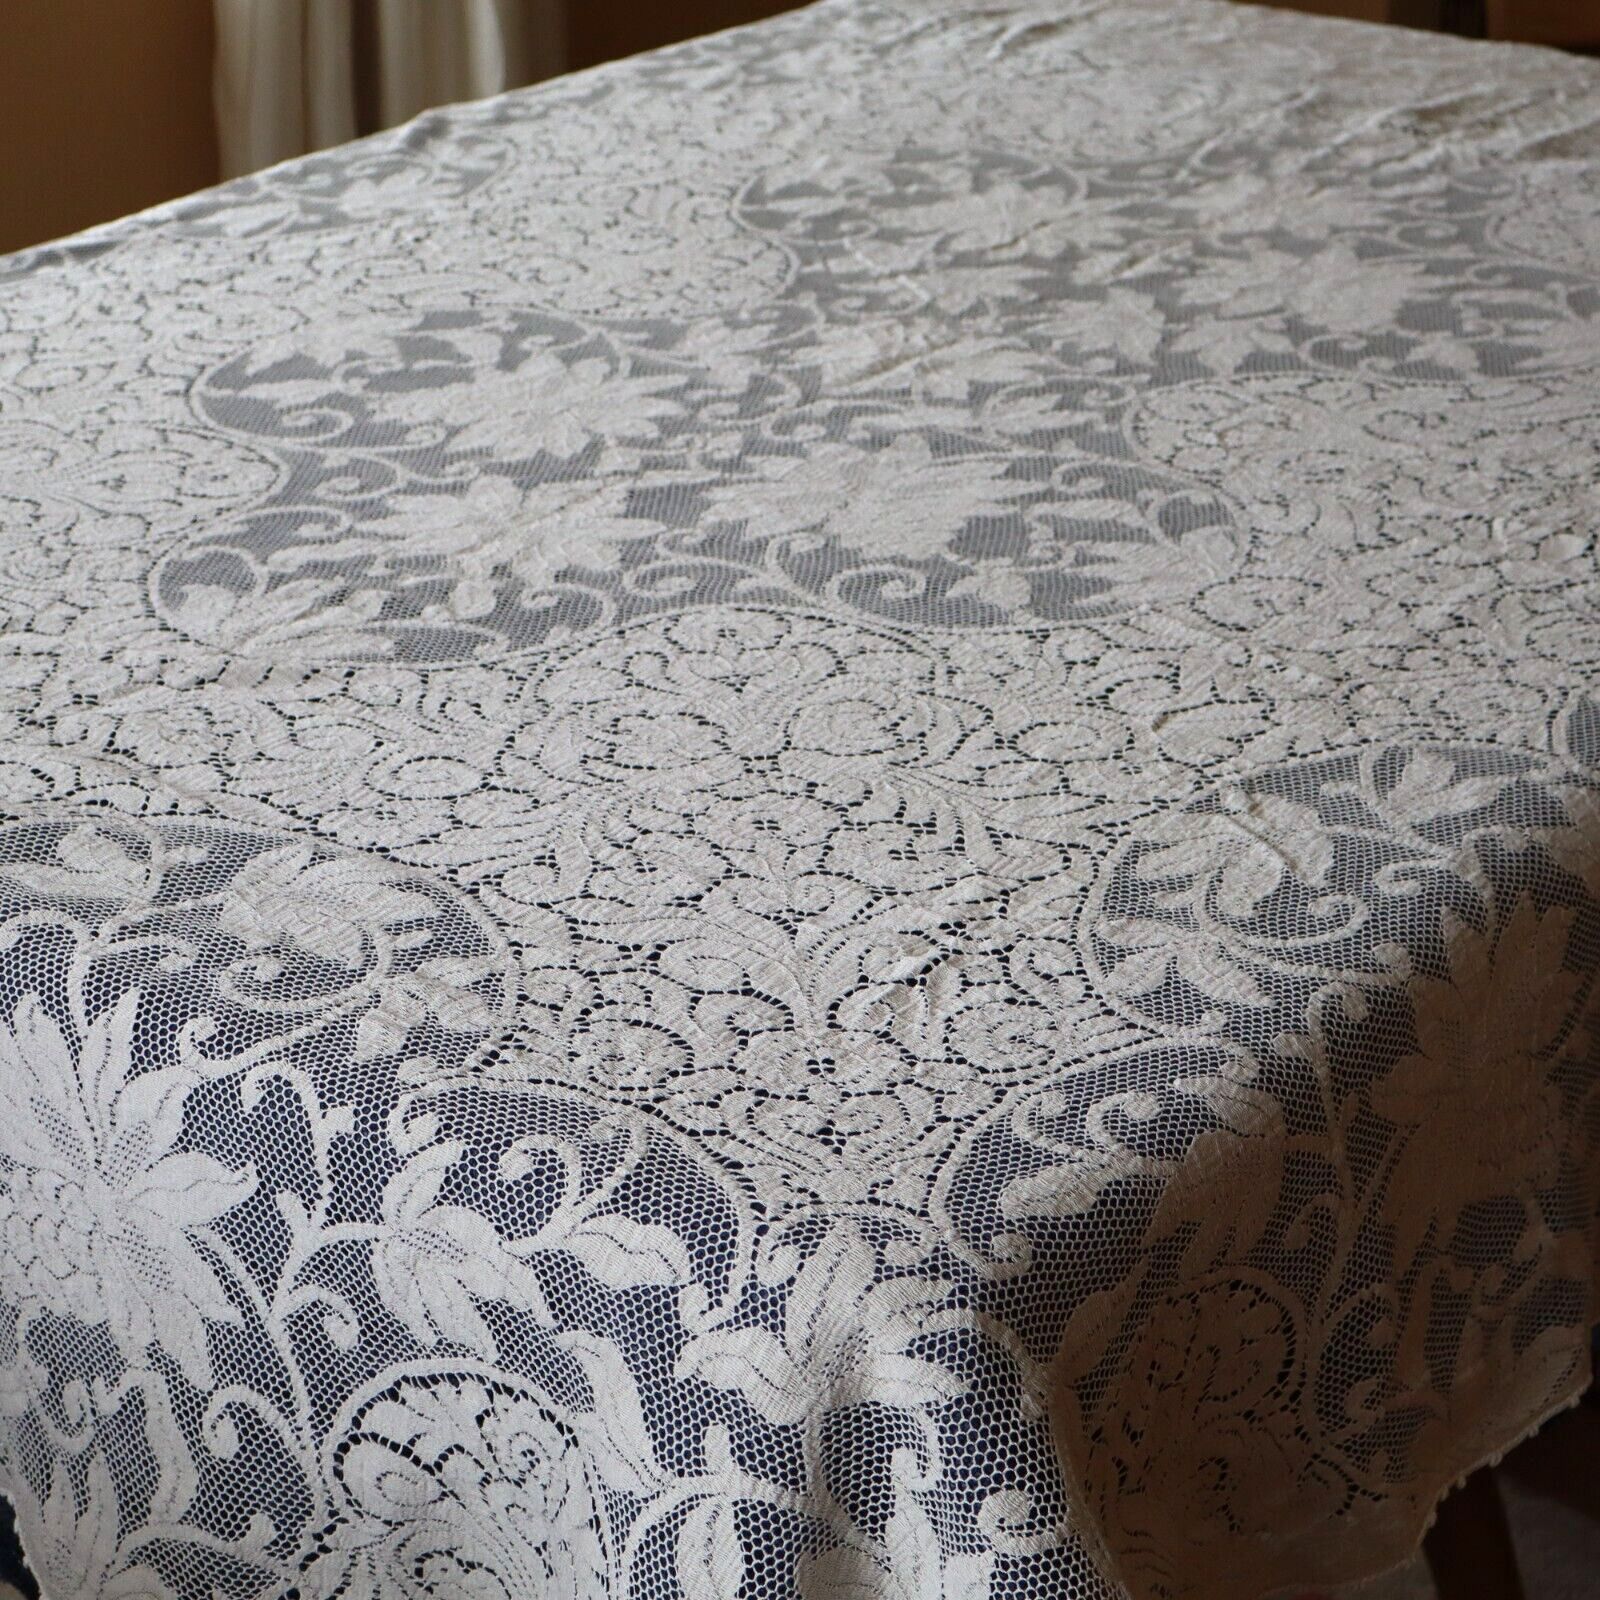 Vtg Quaker Lace Rect Tablecloth Ant White Ecru w Floral w Picot Edges 57 x 76\